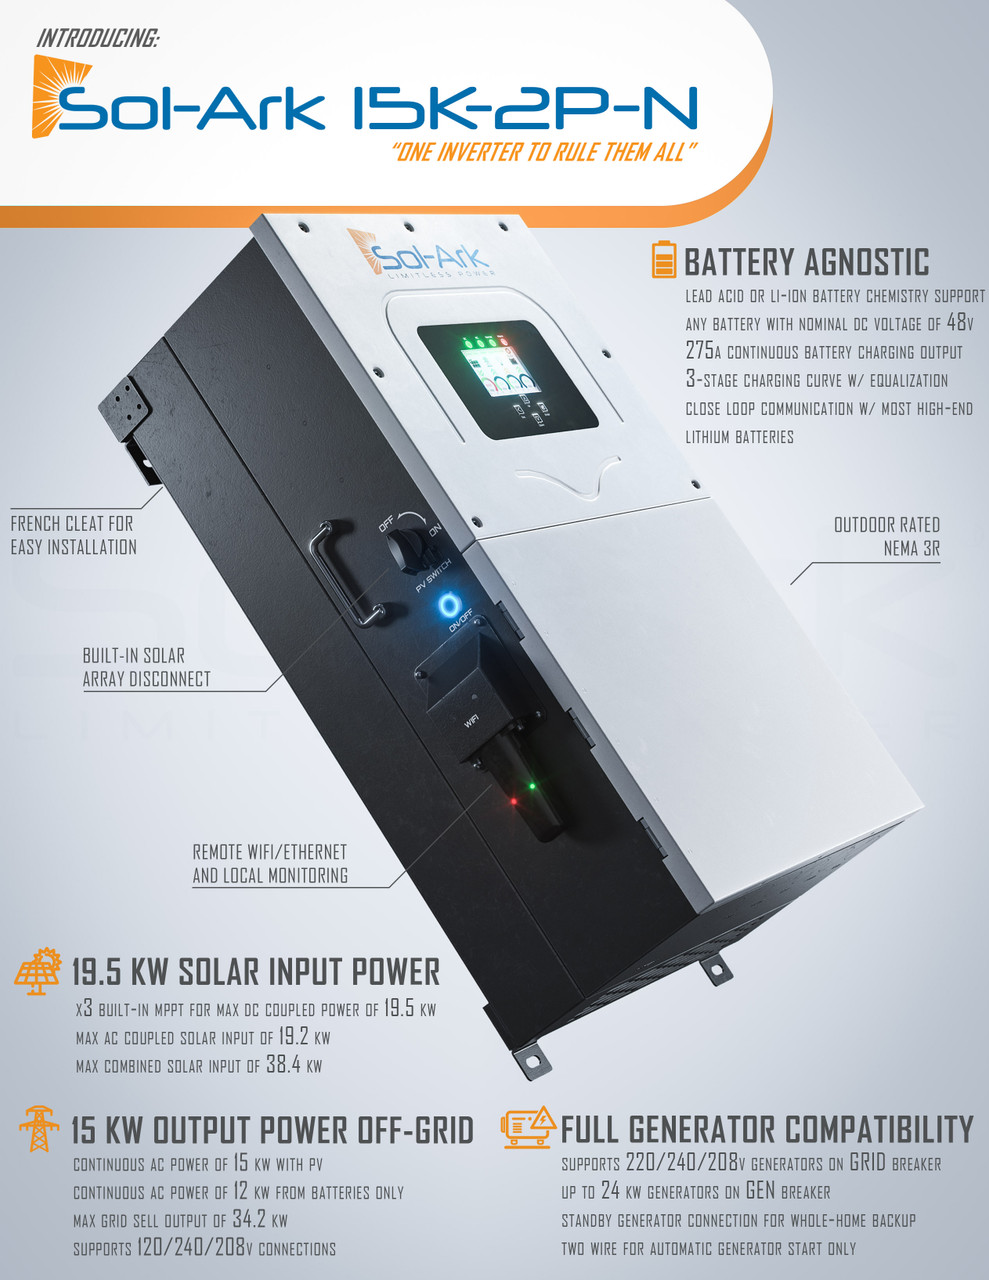 Sol-Ark 8k: The Best All-In-One Hybrid Inverter